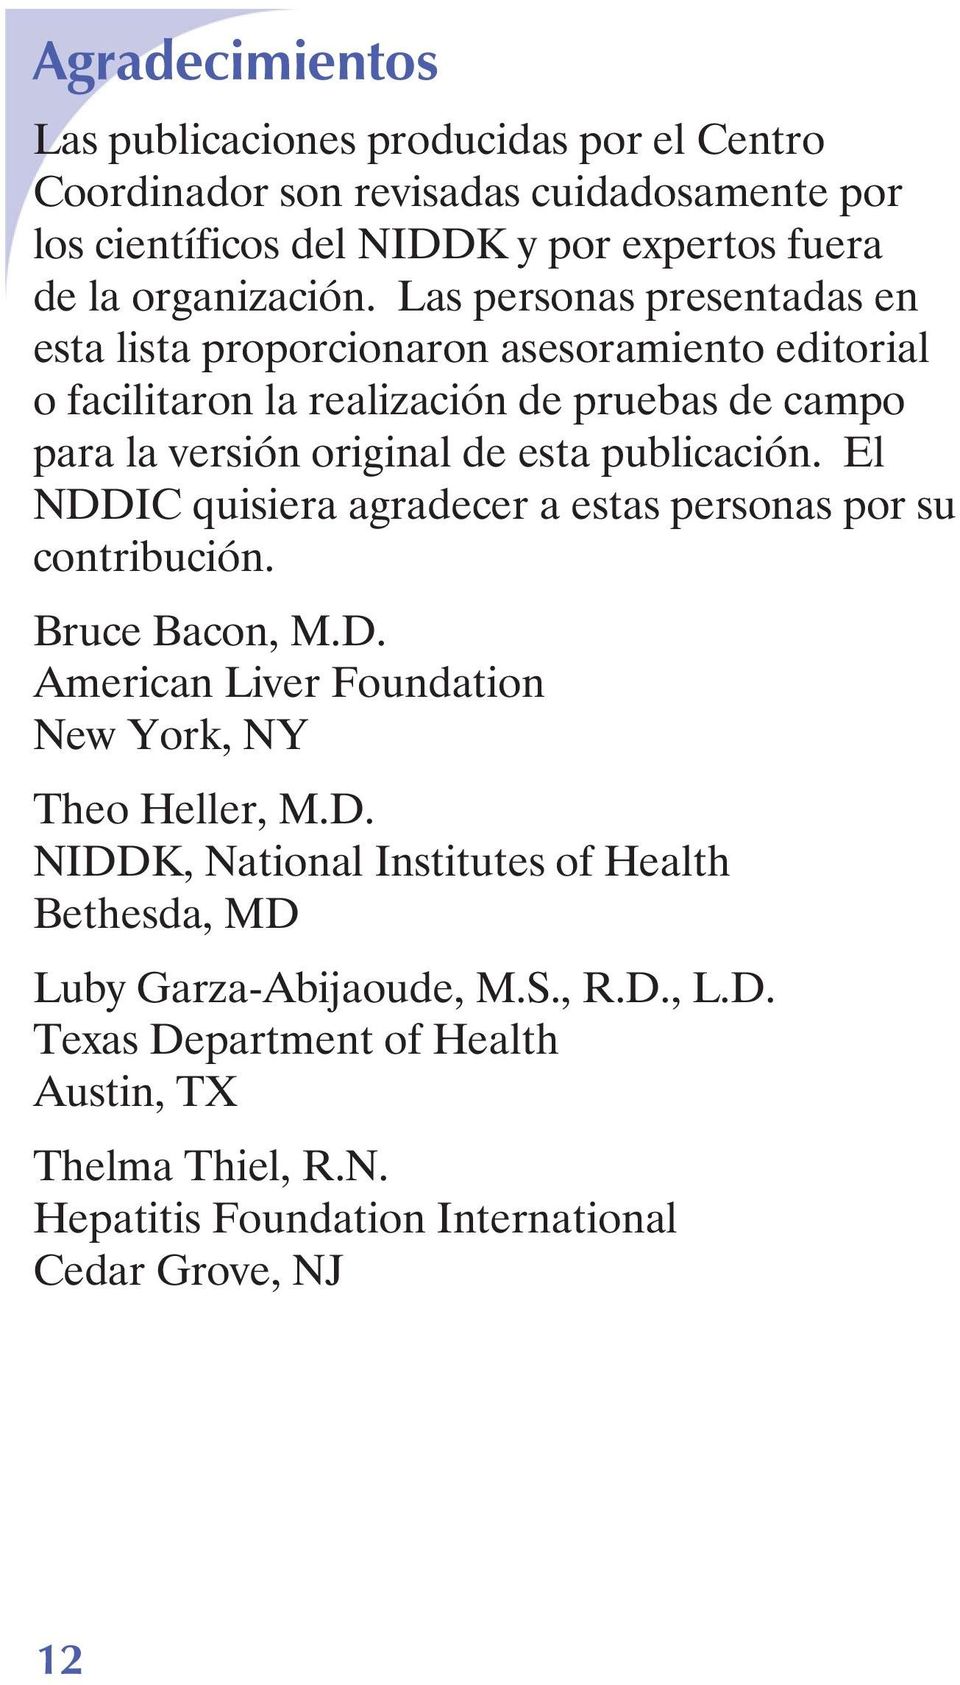 publicación. El NDDIC quisiera agradecer a estas personas por su contribución. Bruce Bacon, M.D. American Liver Foundation New York, NY Theo Heller, M.D. NIDDK, National Institutes of Health Bethesda, MD Luby Garza-Abijaoude, M.